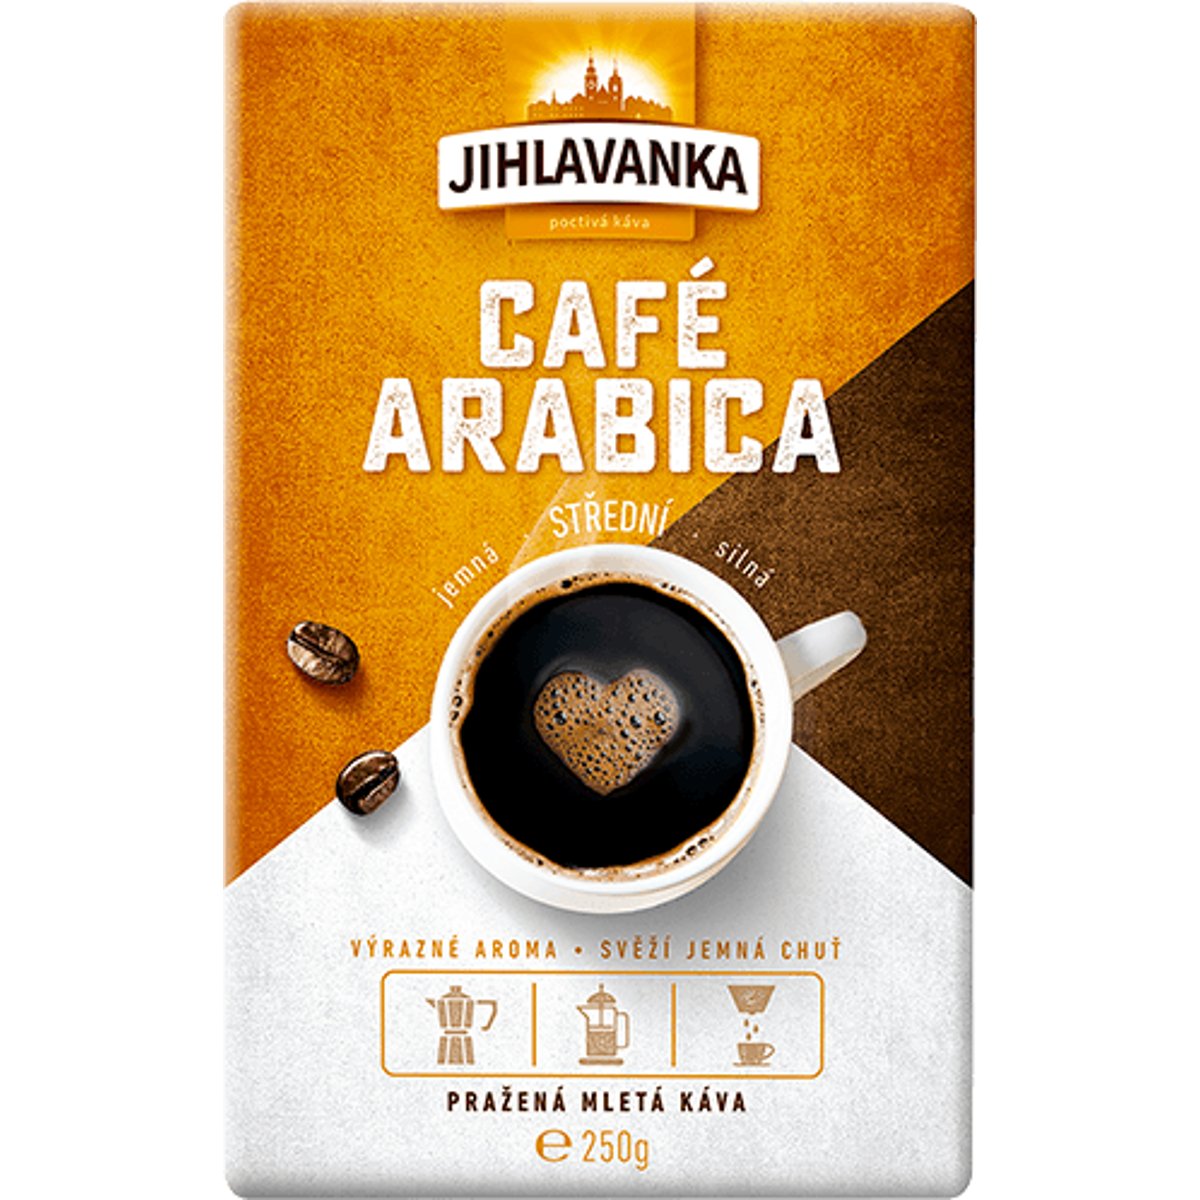 Jihlavanka Café Arabica Pražená mletá káva v akci